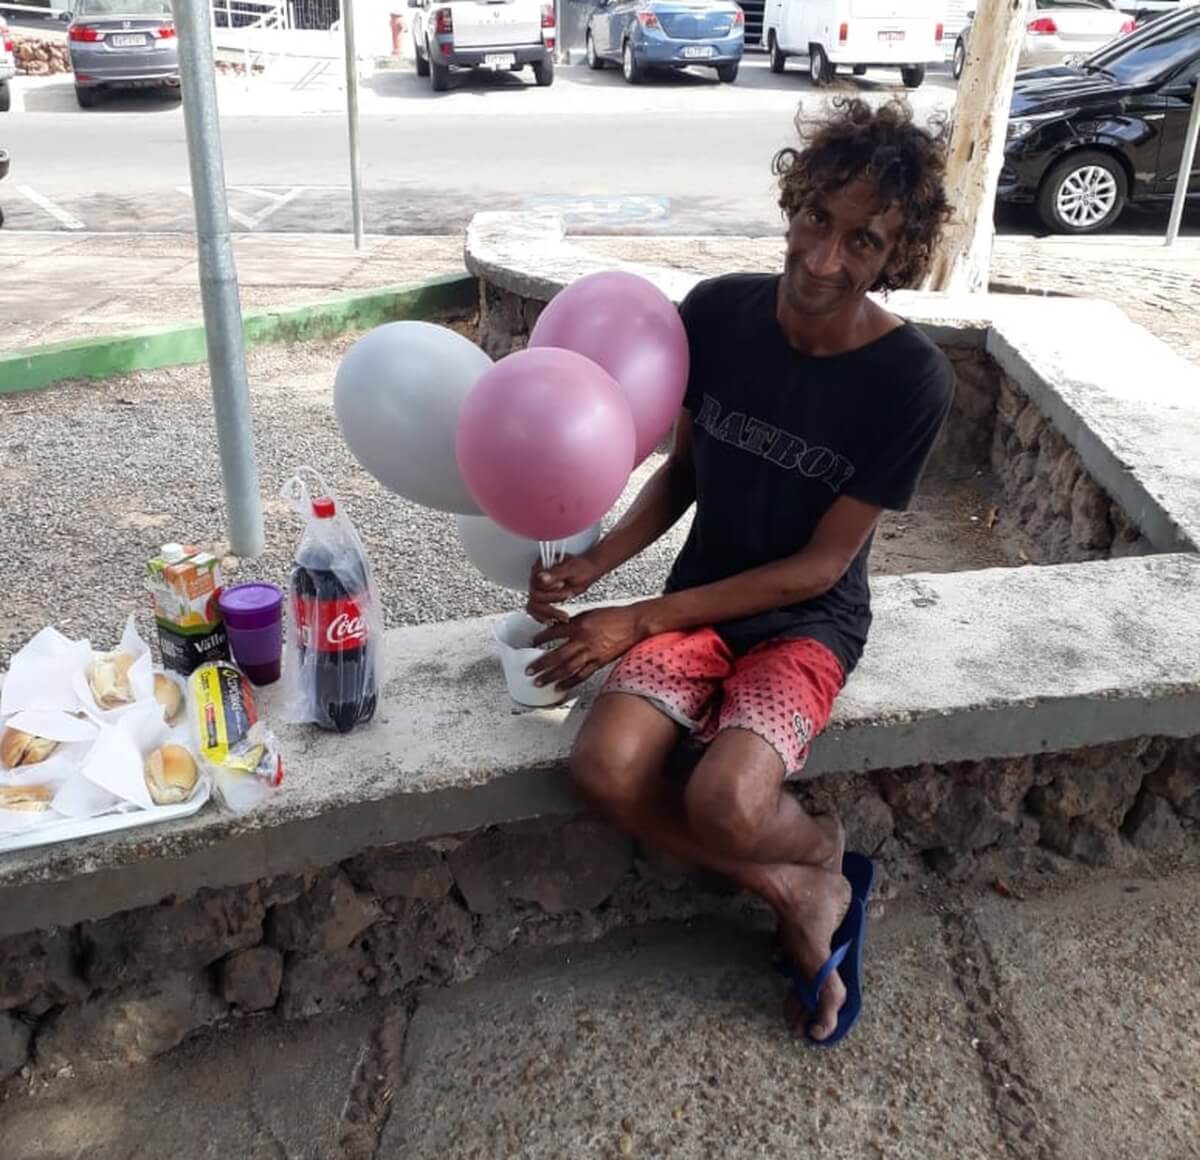 contioutra.com - Funcionários de hospital fazem de festa de aniversário surpresa para morador de rua